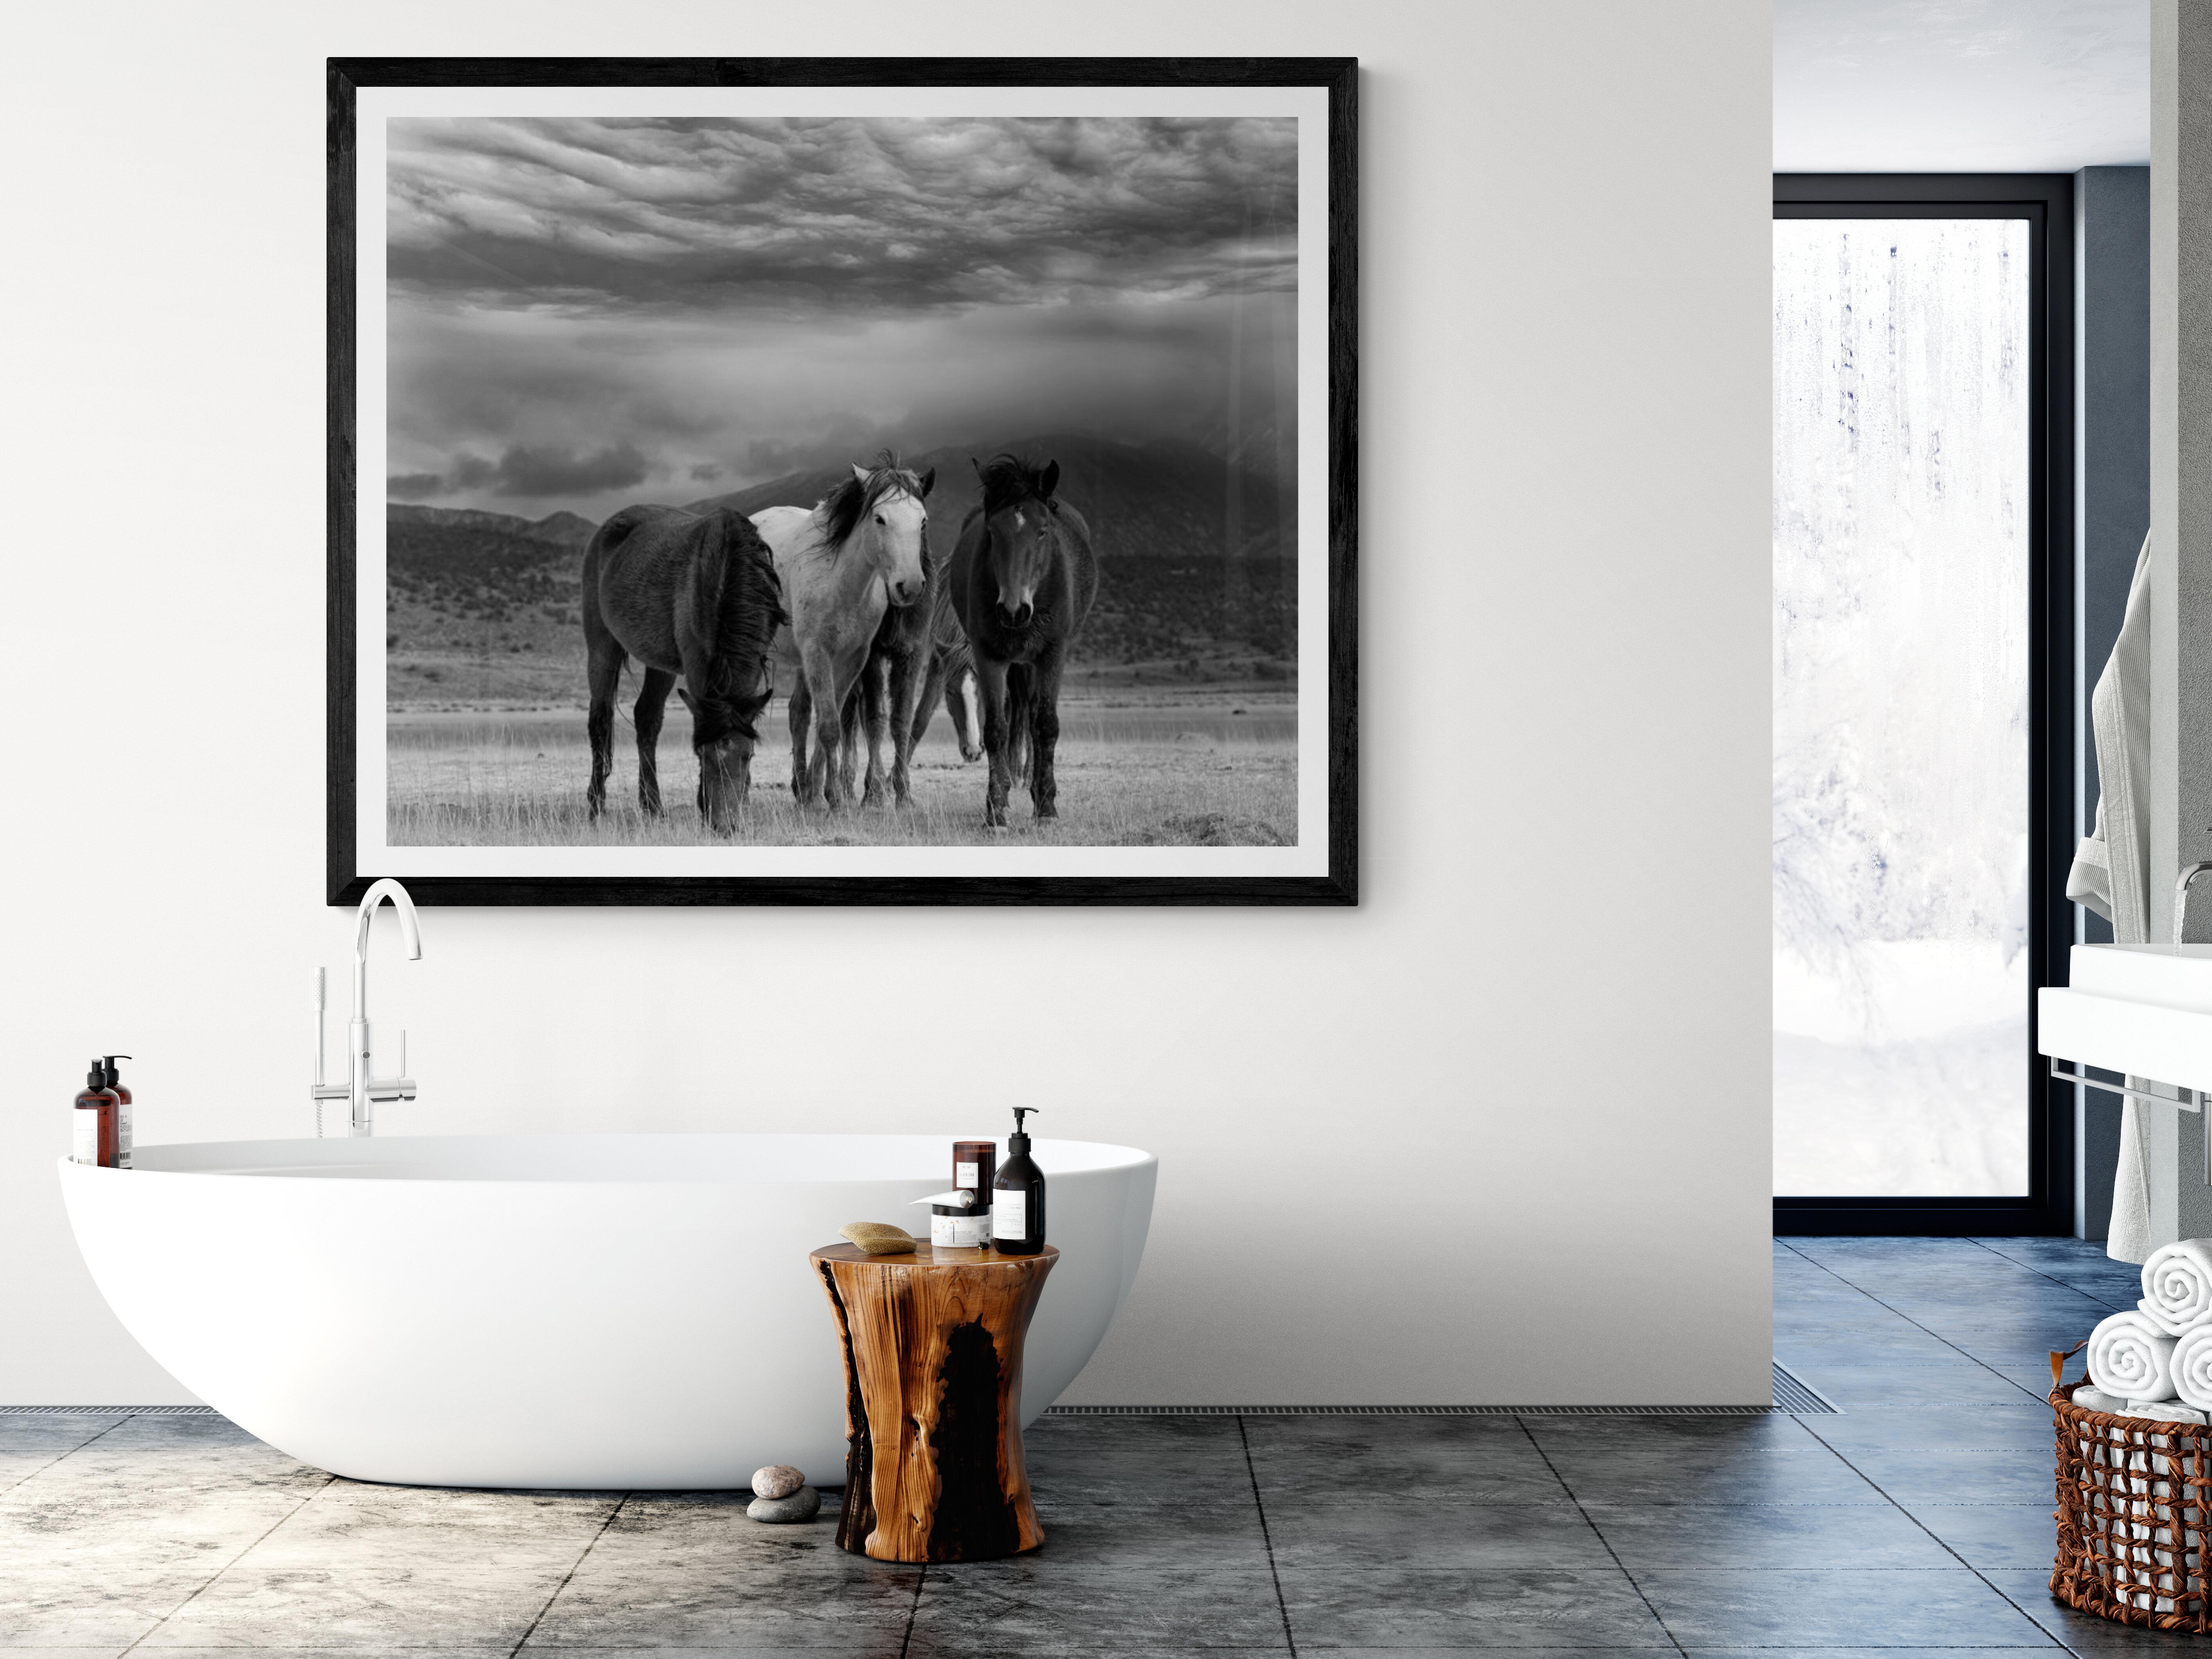 Dies ist eine zeitgenössische Schwarz-Weiß-Fotografie von nordamerikanischen Wildpferden
Fotografie von Shane Russeck
Gedruckt auf Archivierungspapier 
Einrahmung verfügbar. Erkundigen Sie sich nach den Preisen. 
Vorzeichenlos
45